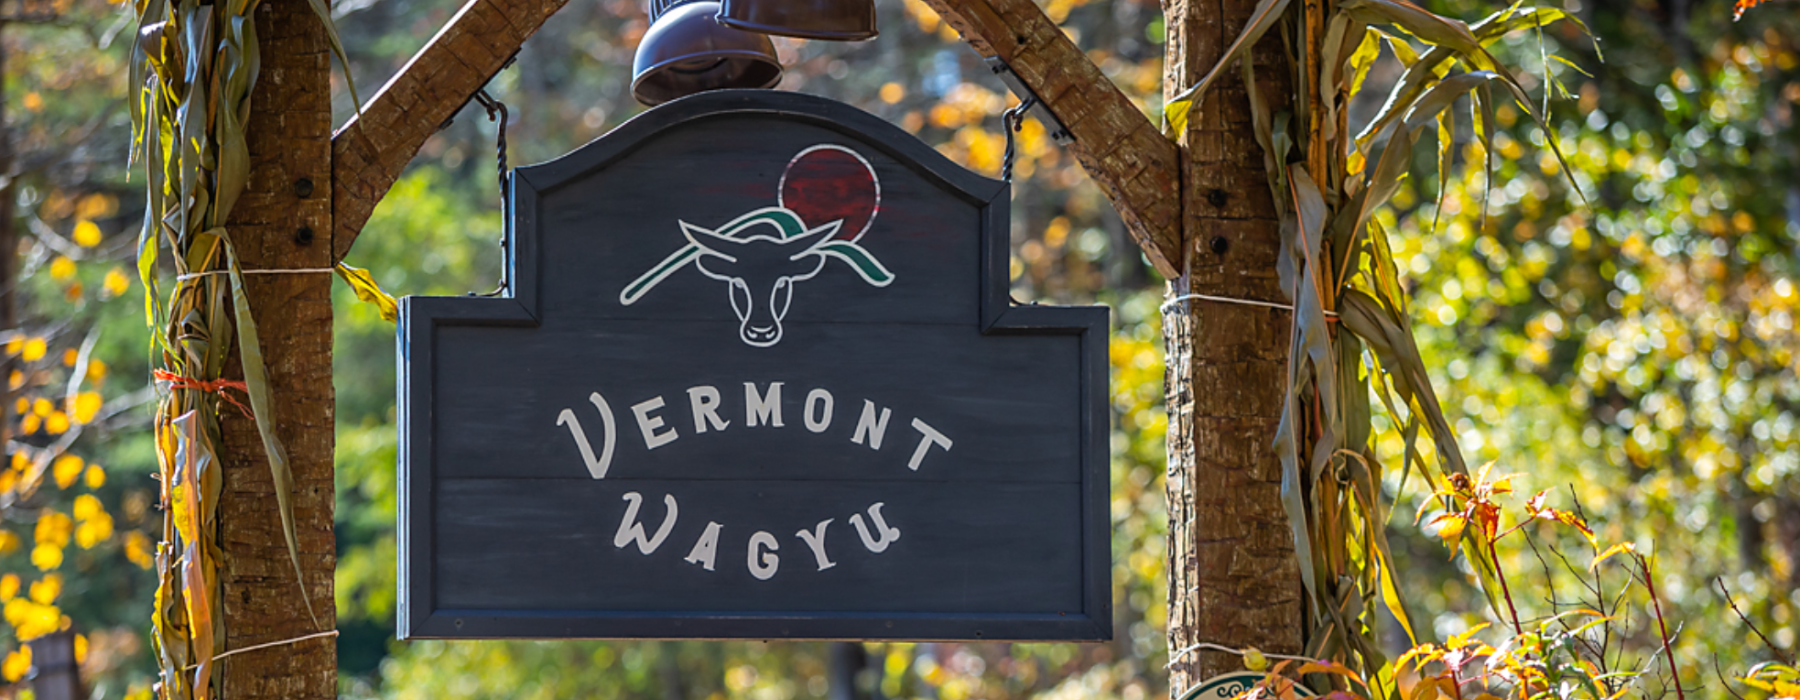 Vermont Wagyu Sign